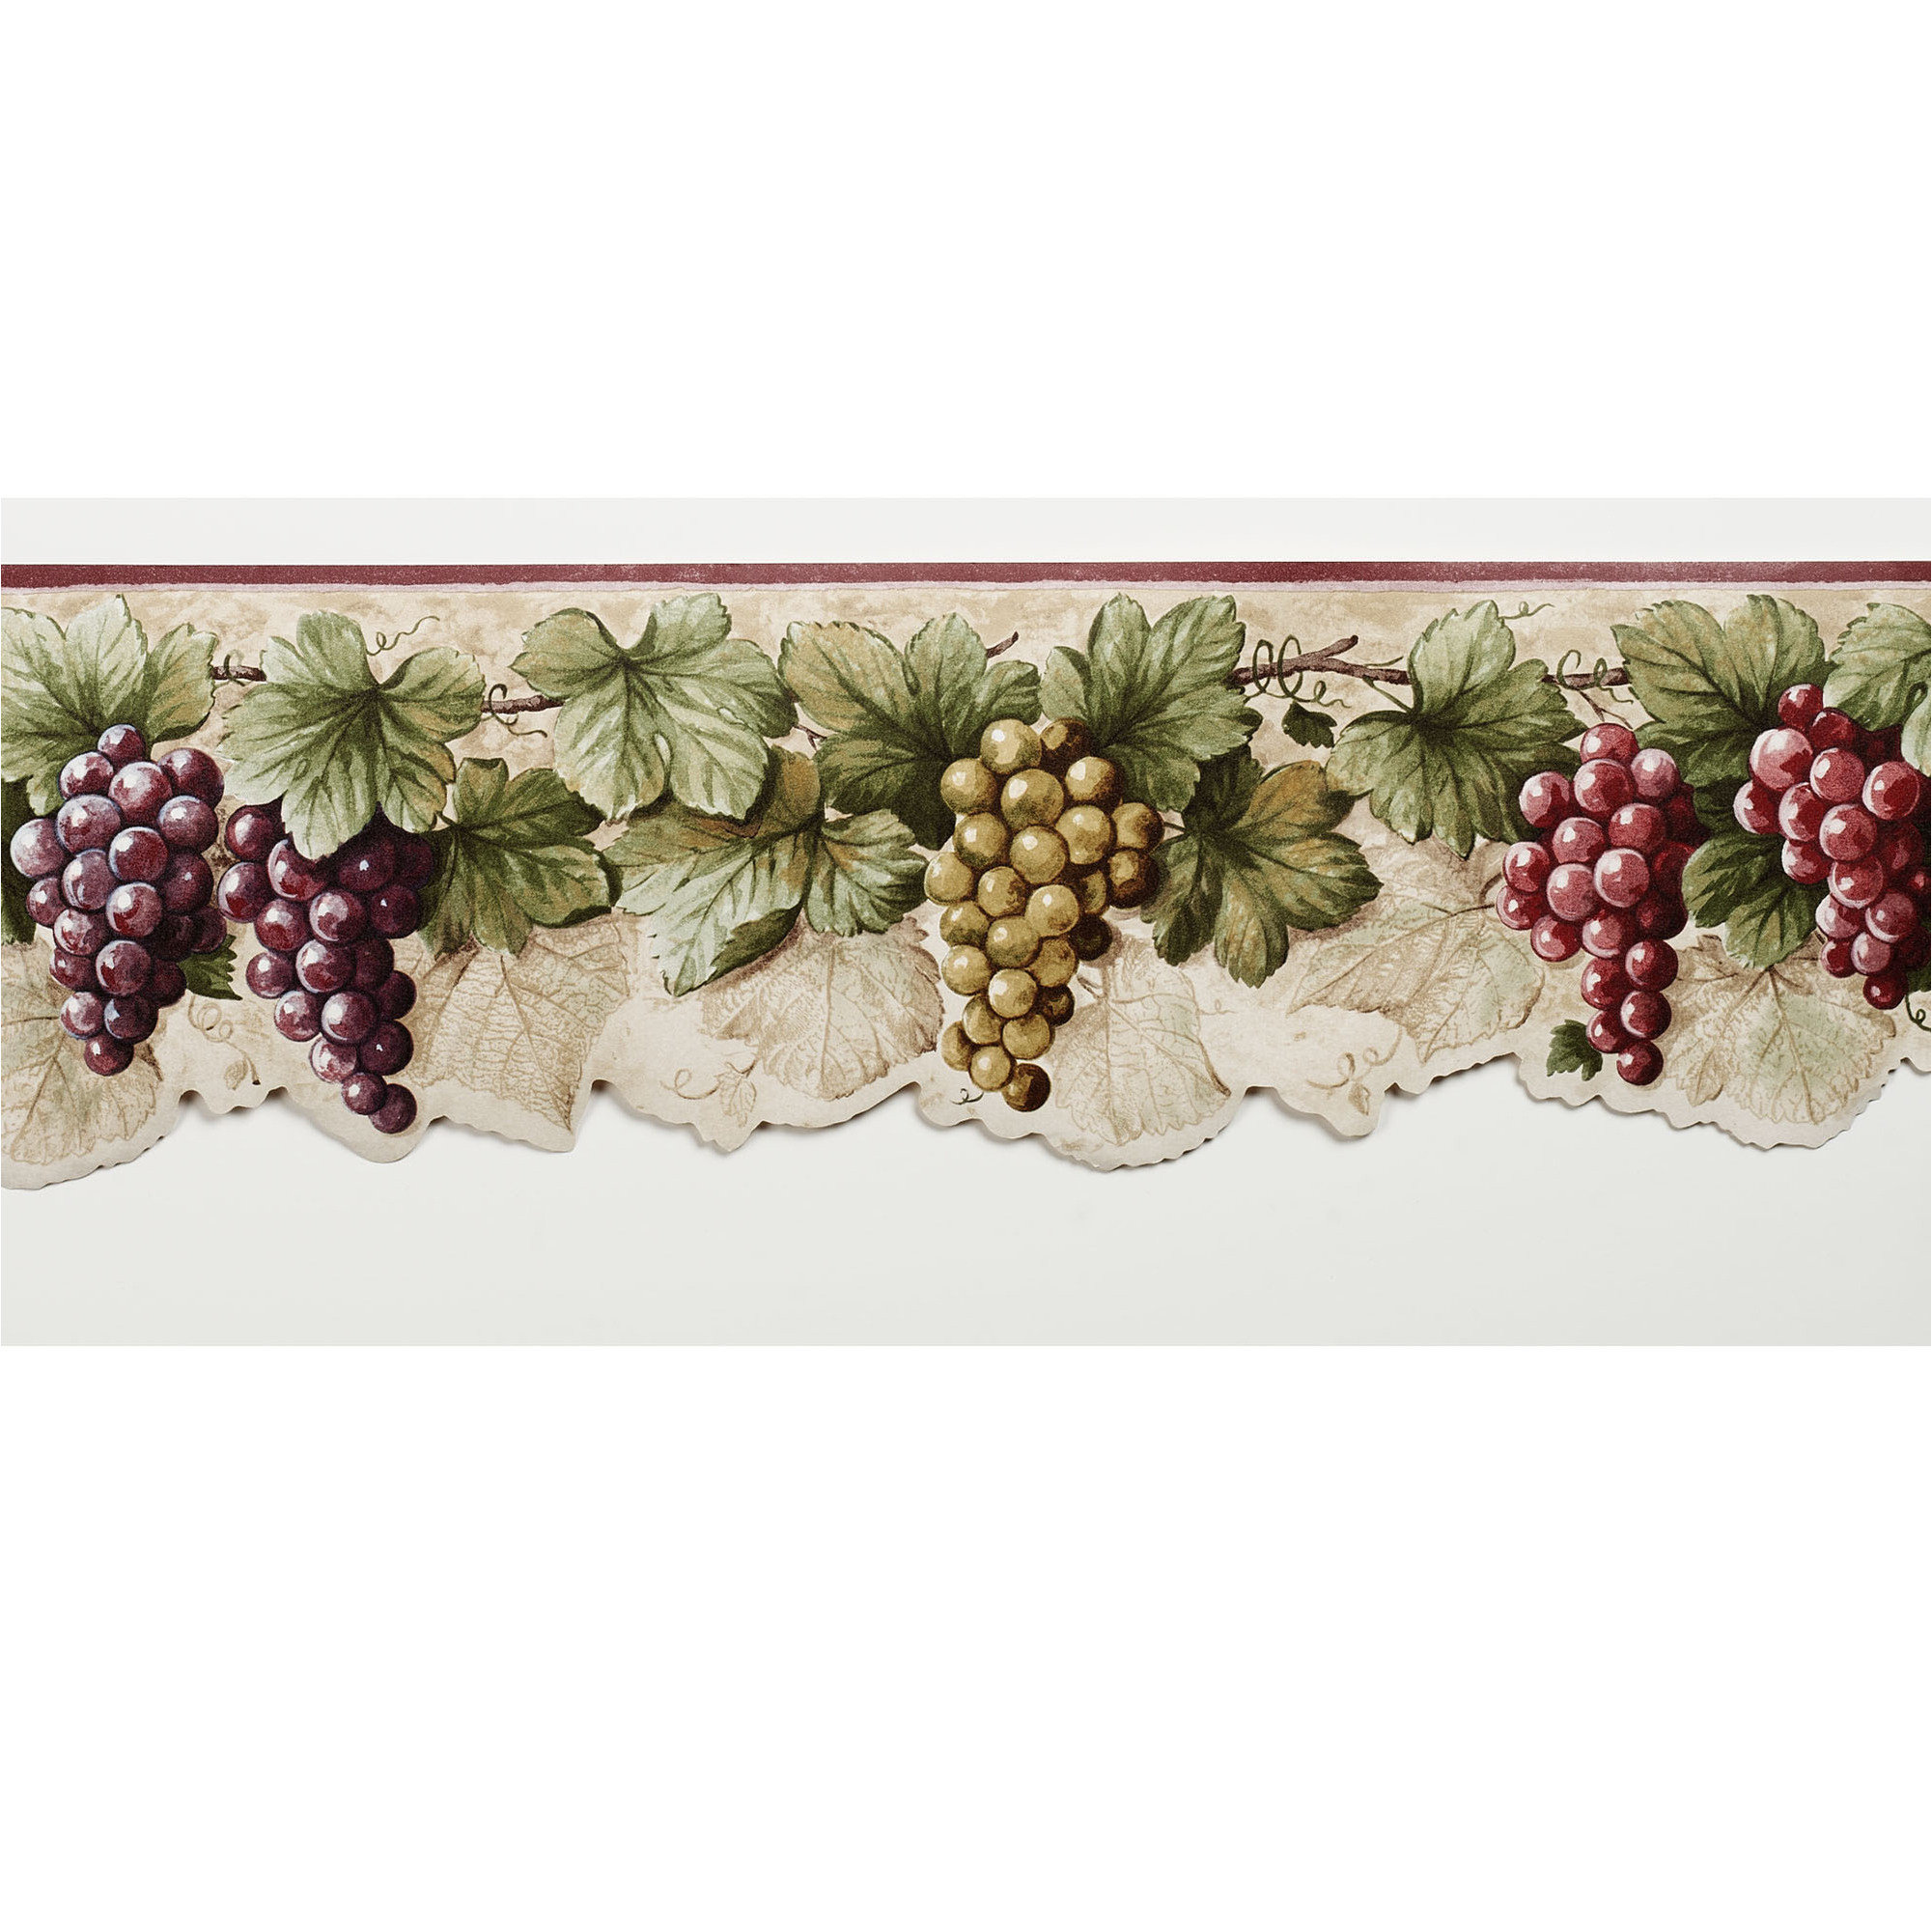 bordures de papier peint,grain de raisin,plante,fruit,baie,feuille